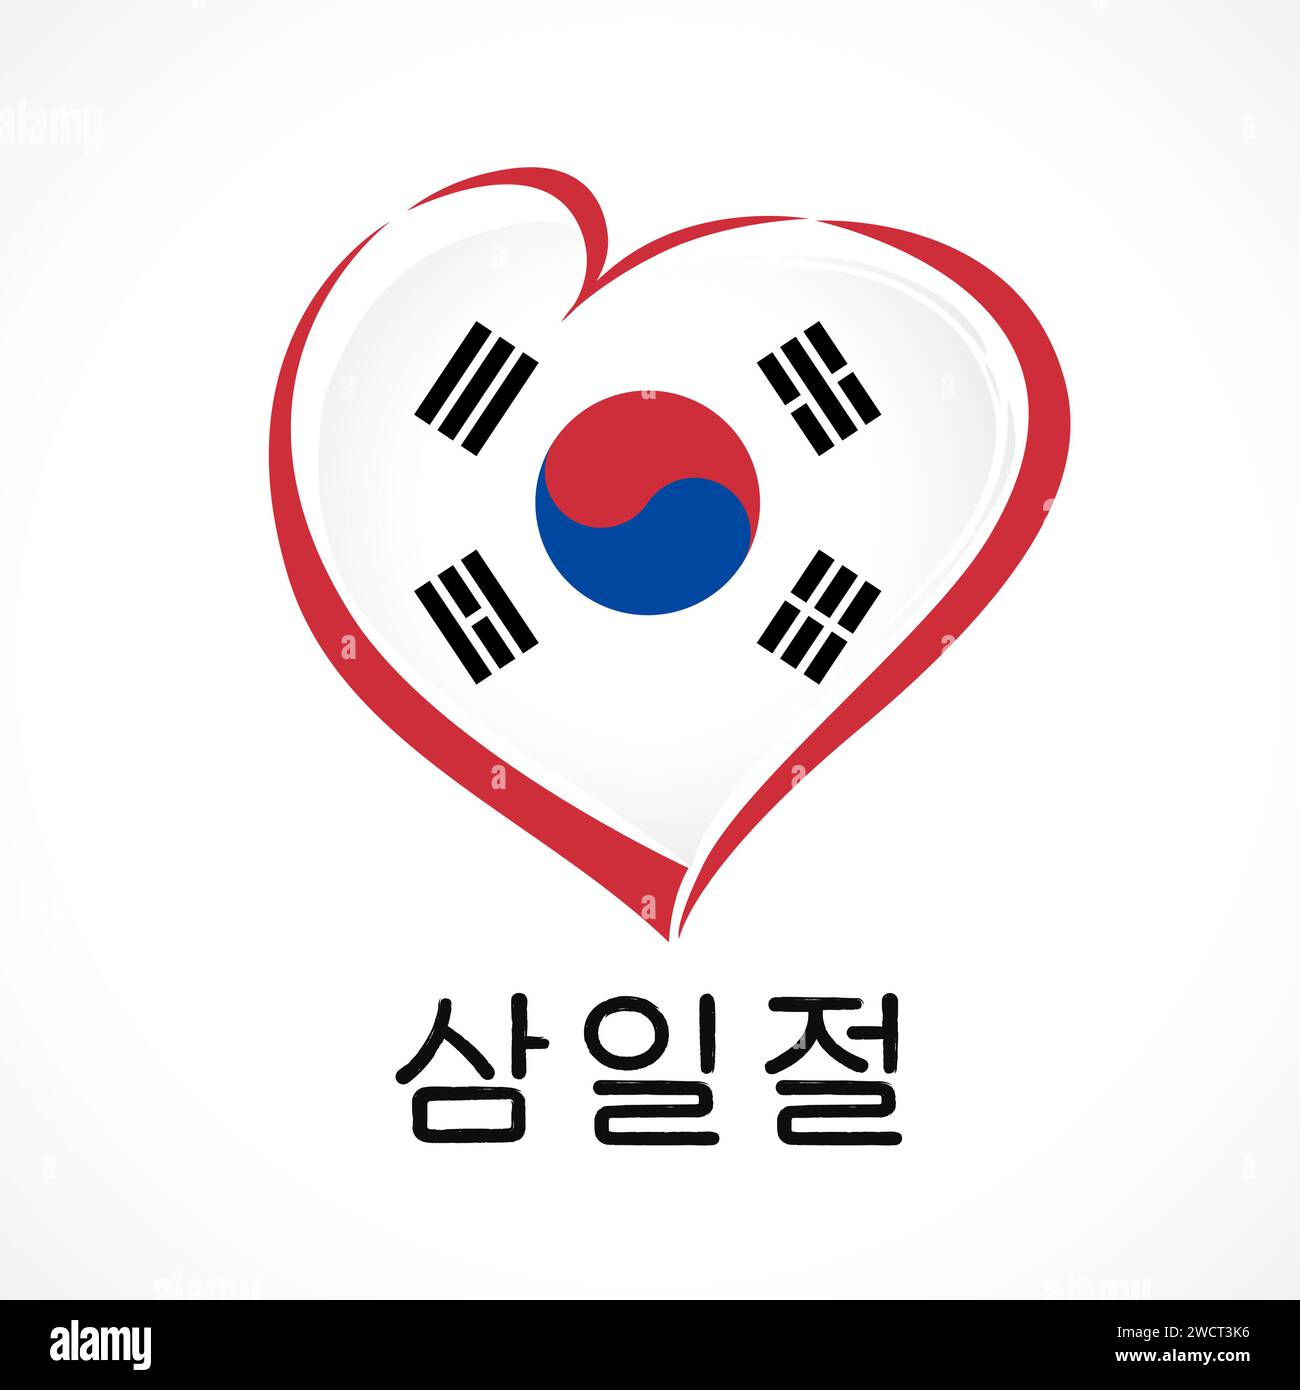 Mouvement de l'indépendance Journée de la Corée emblème du coeur, T-shirt ou logo cadeau. Icône isolée et typographie coréenne - Journée du mouvement de l'indépendance, mars 1. Illustration de Vecteur